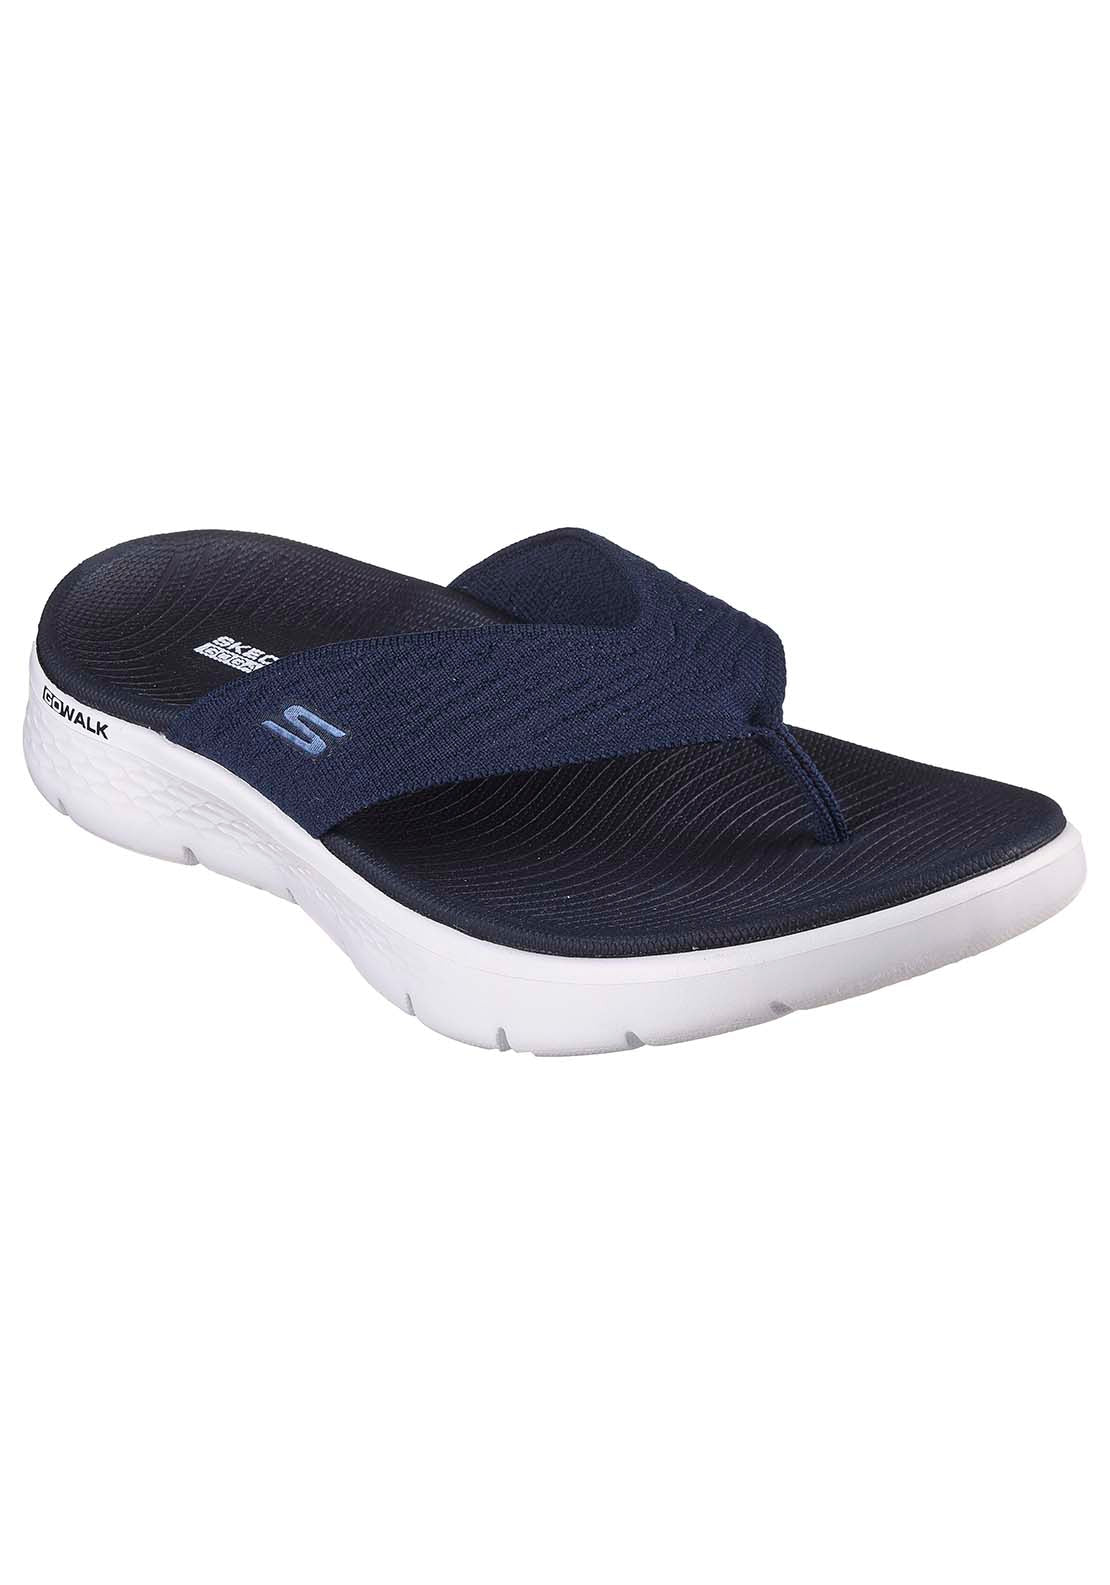 Skechers Go Walk Flex Sandal - Splendor - Navy 1 Shaws Department Stores